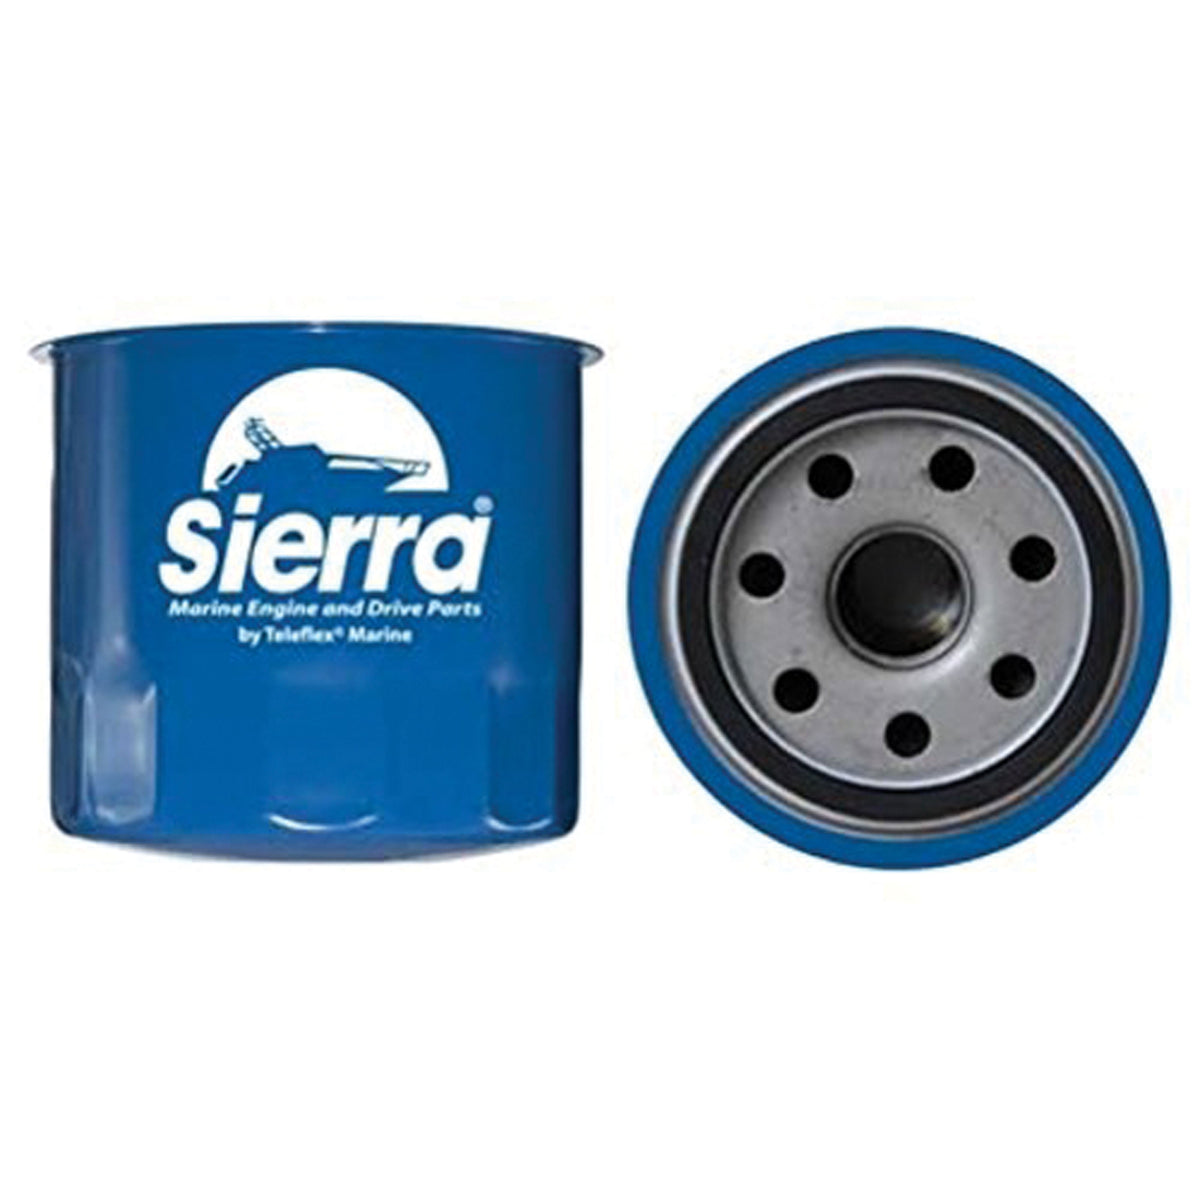 Sierra 23-7800 Oil Filter